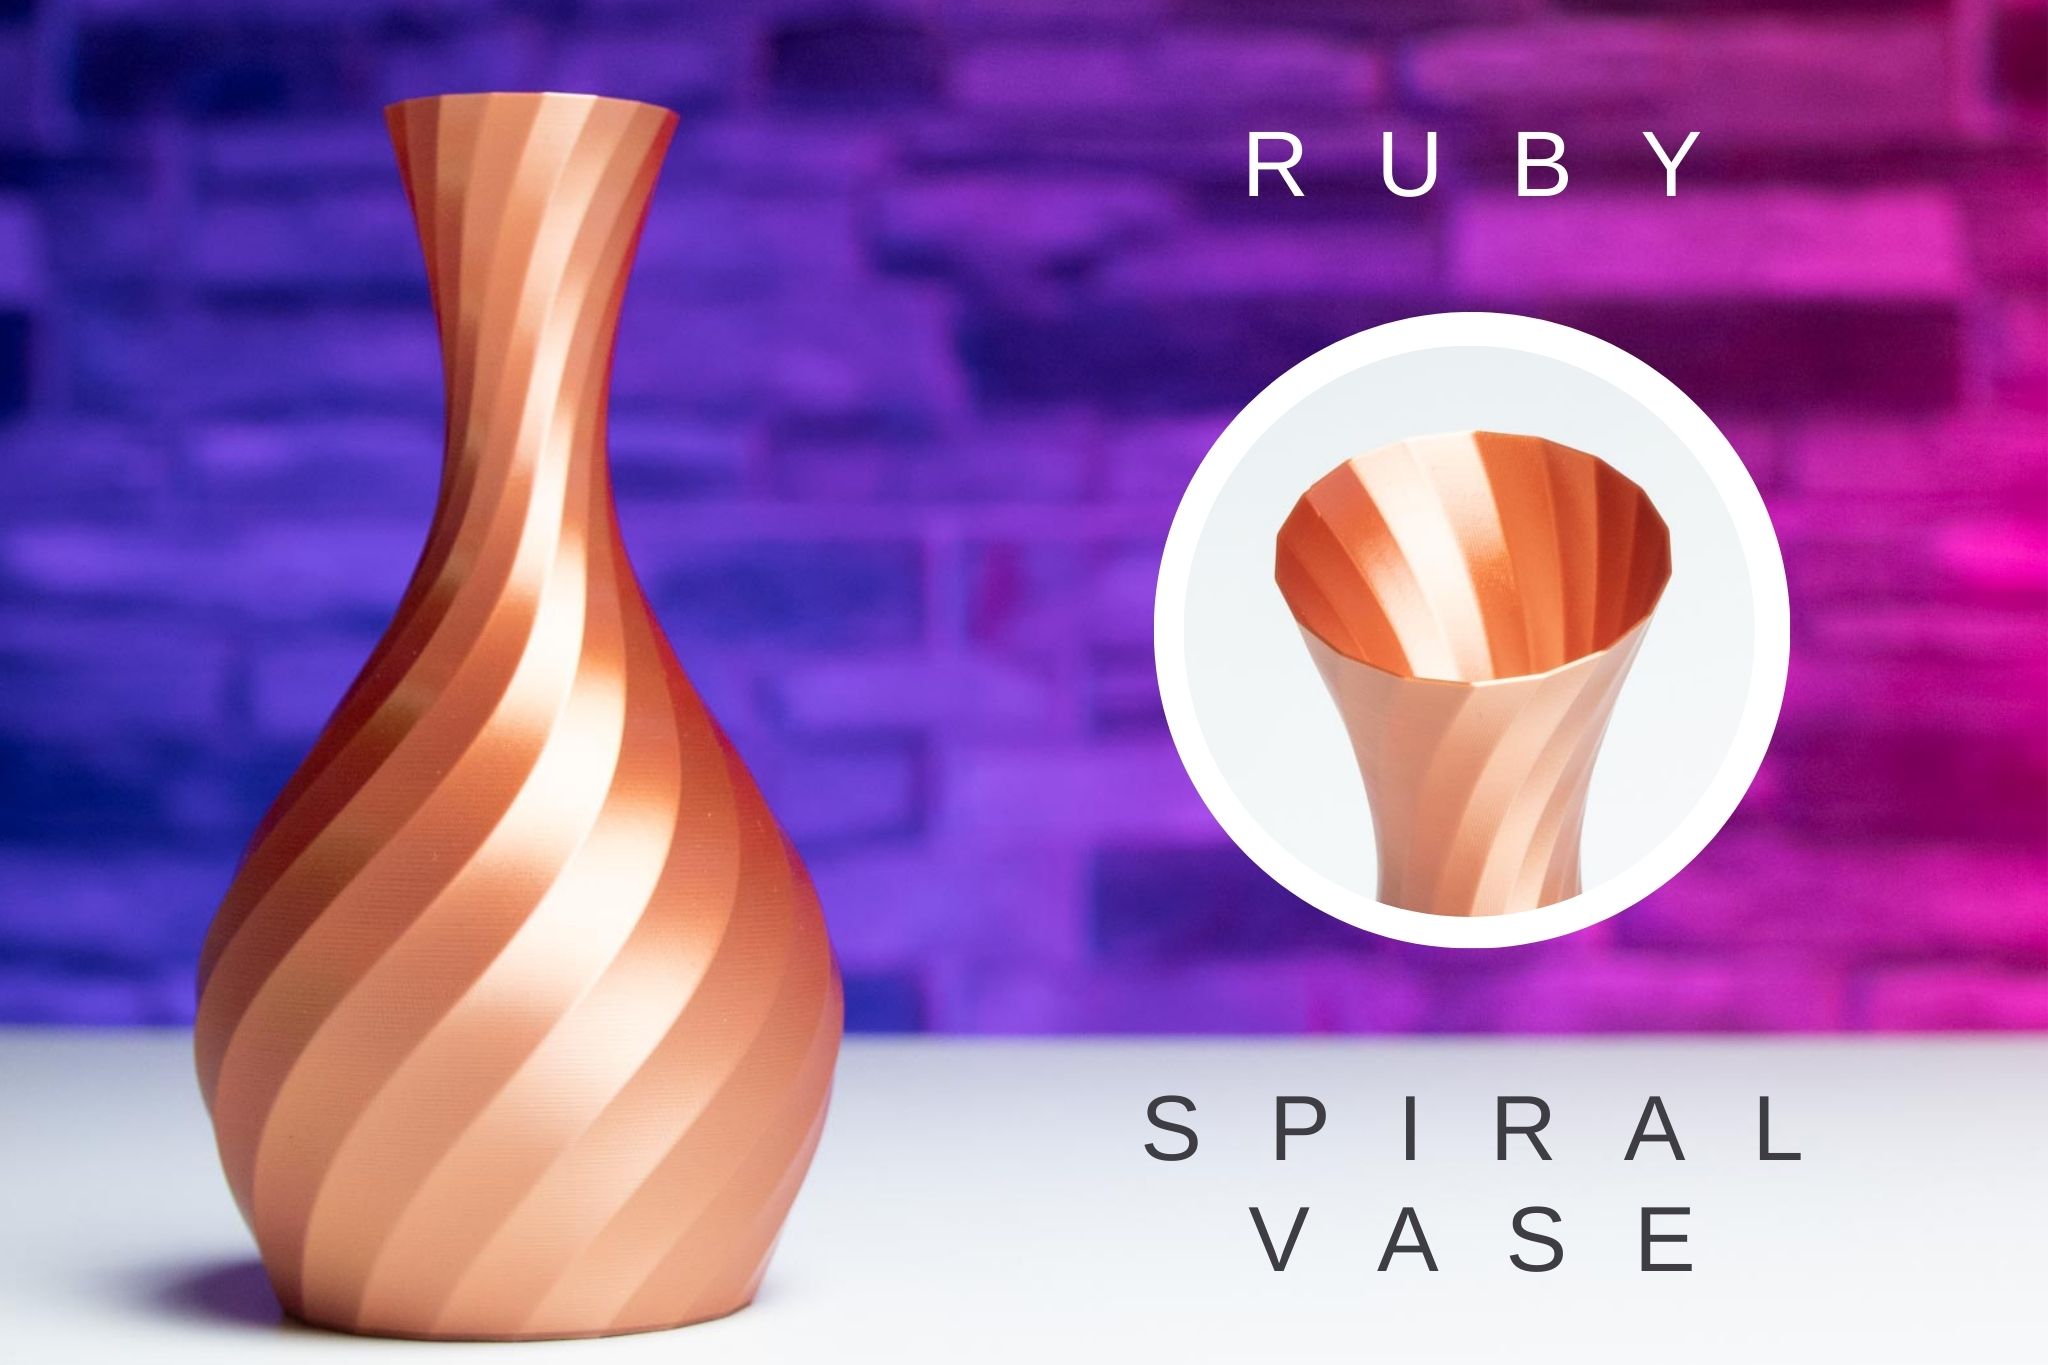 3D Printed Spiral Vase RUBY